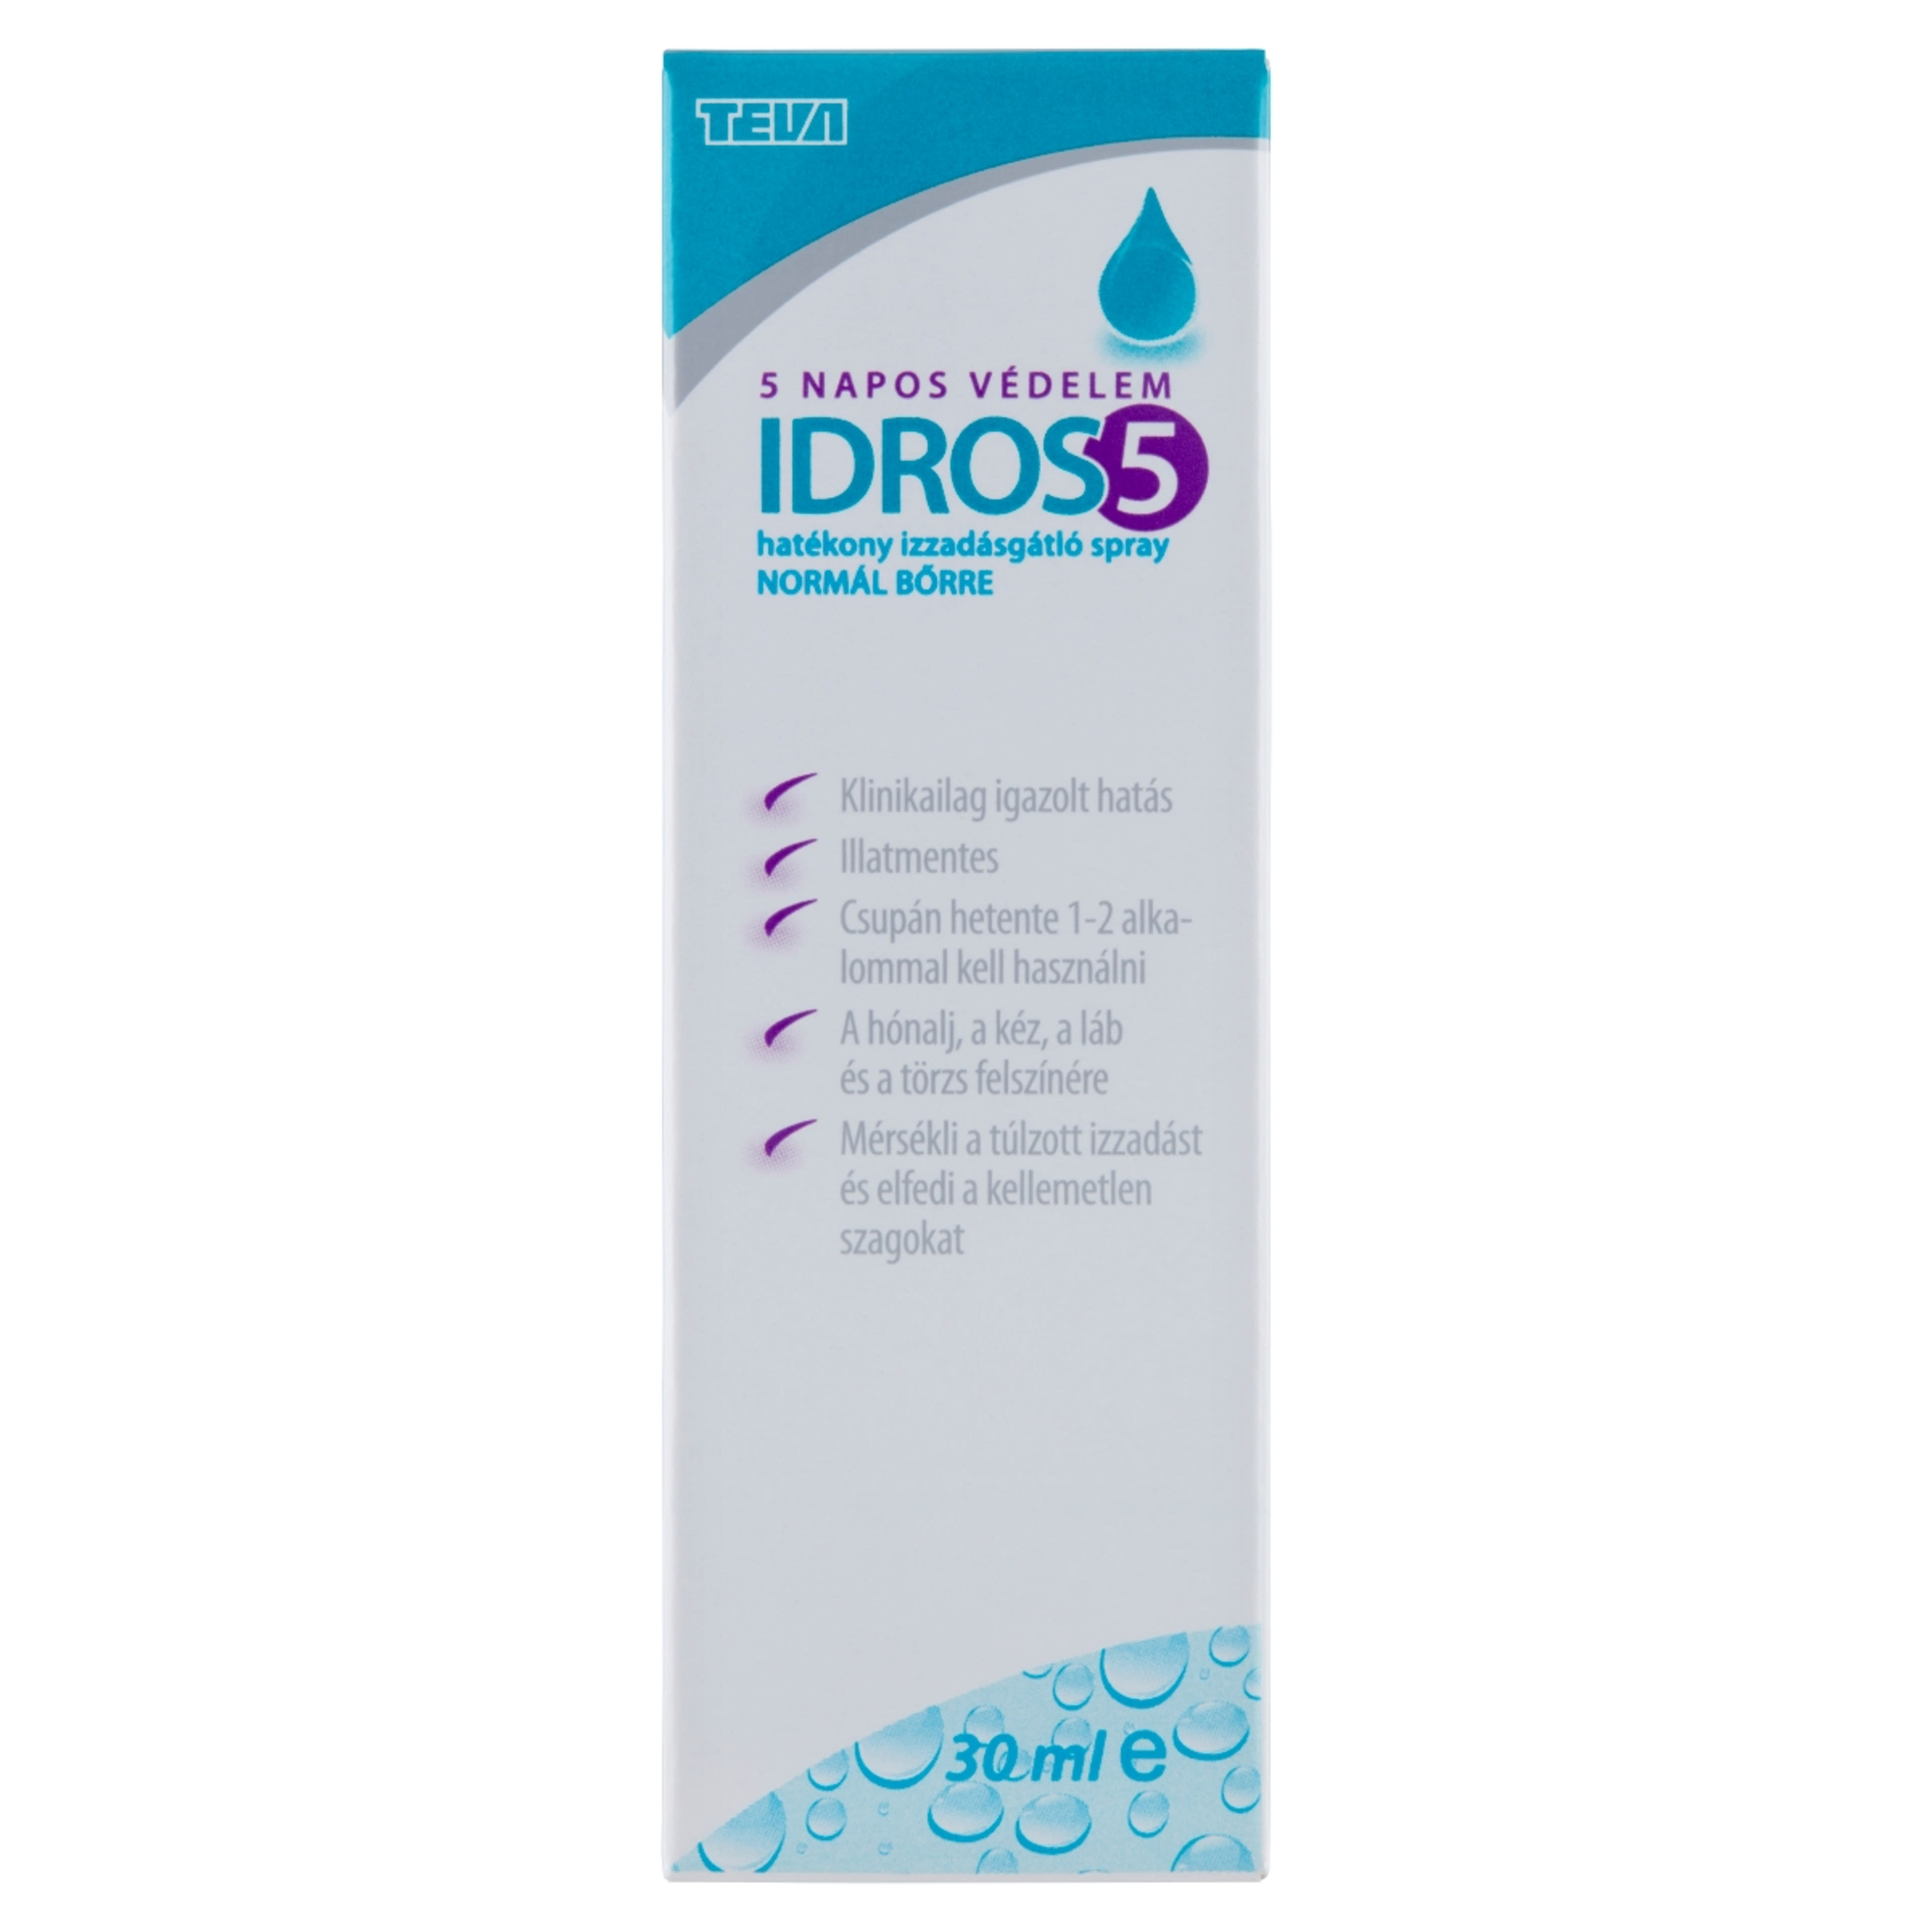 Idros5 izzadságátló spray - 30 ml